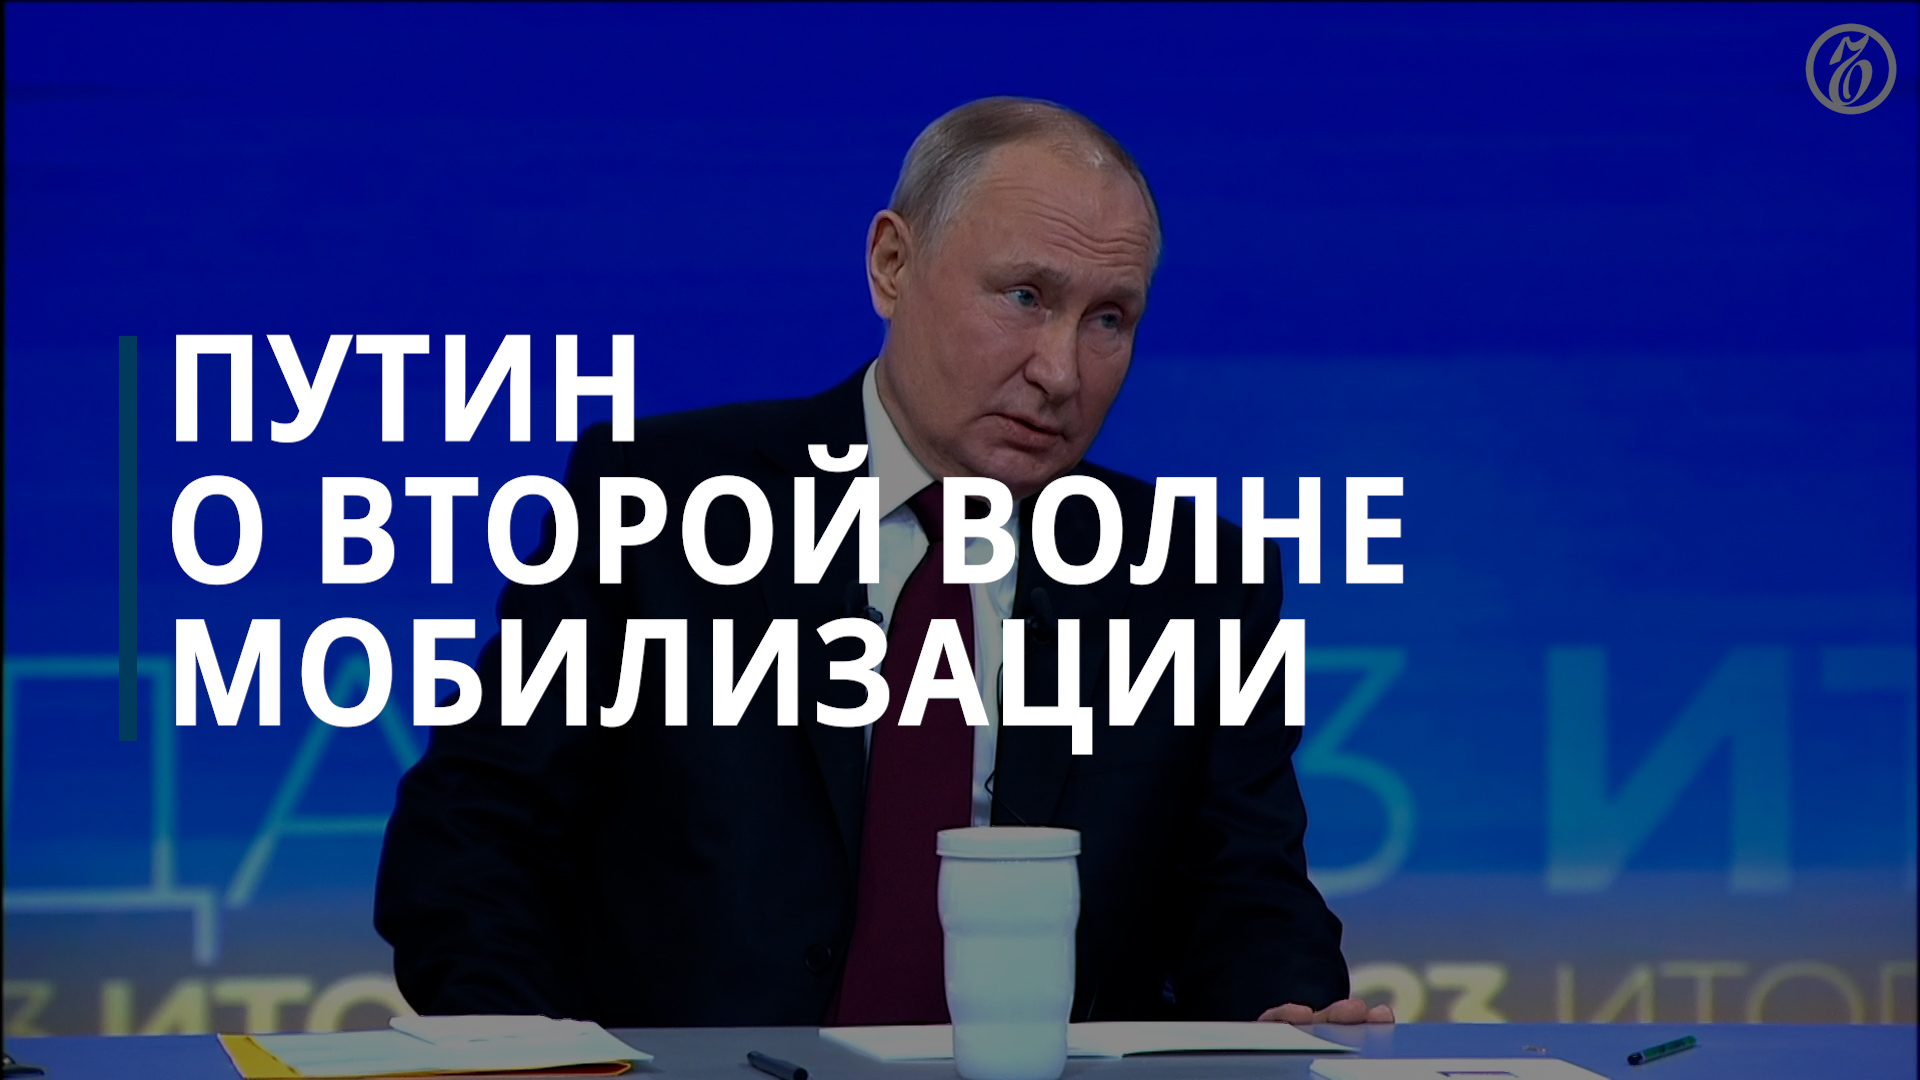 На сегодняшний день нет необходимости в новой мобилизации — Владимир Путин